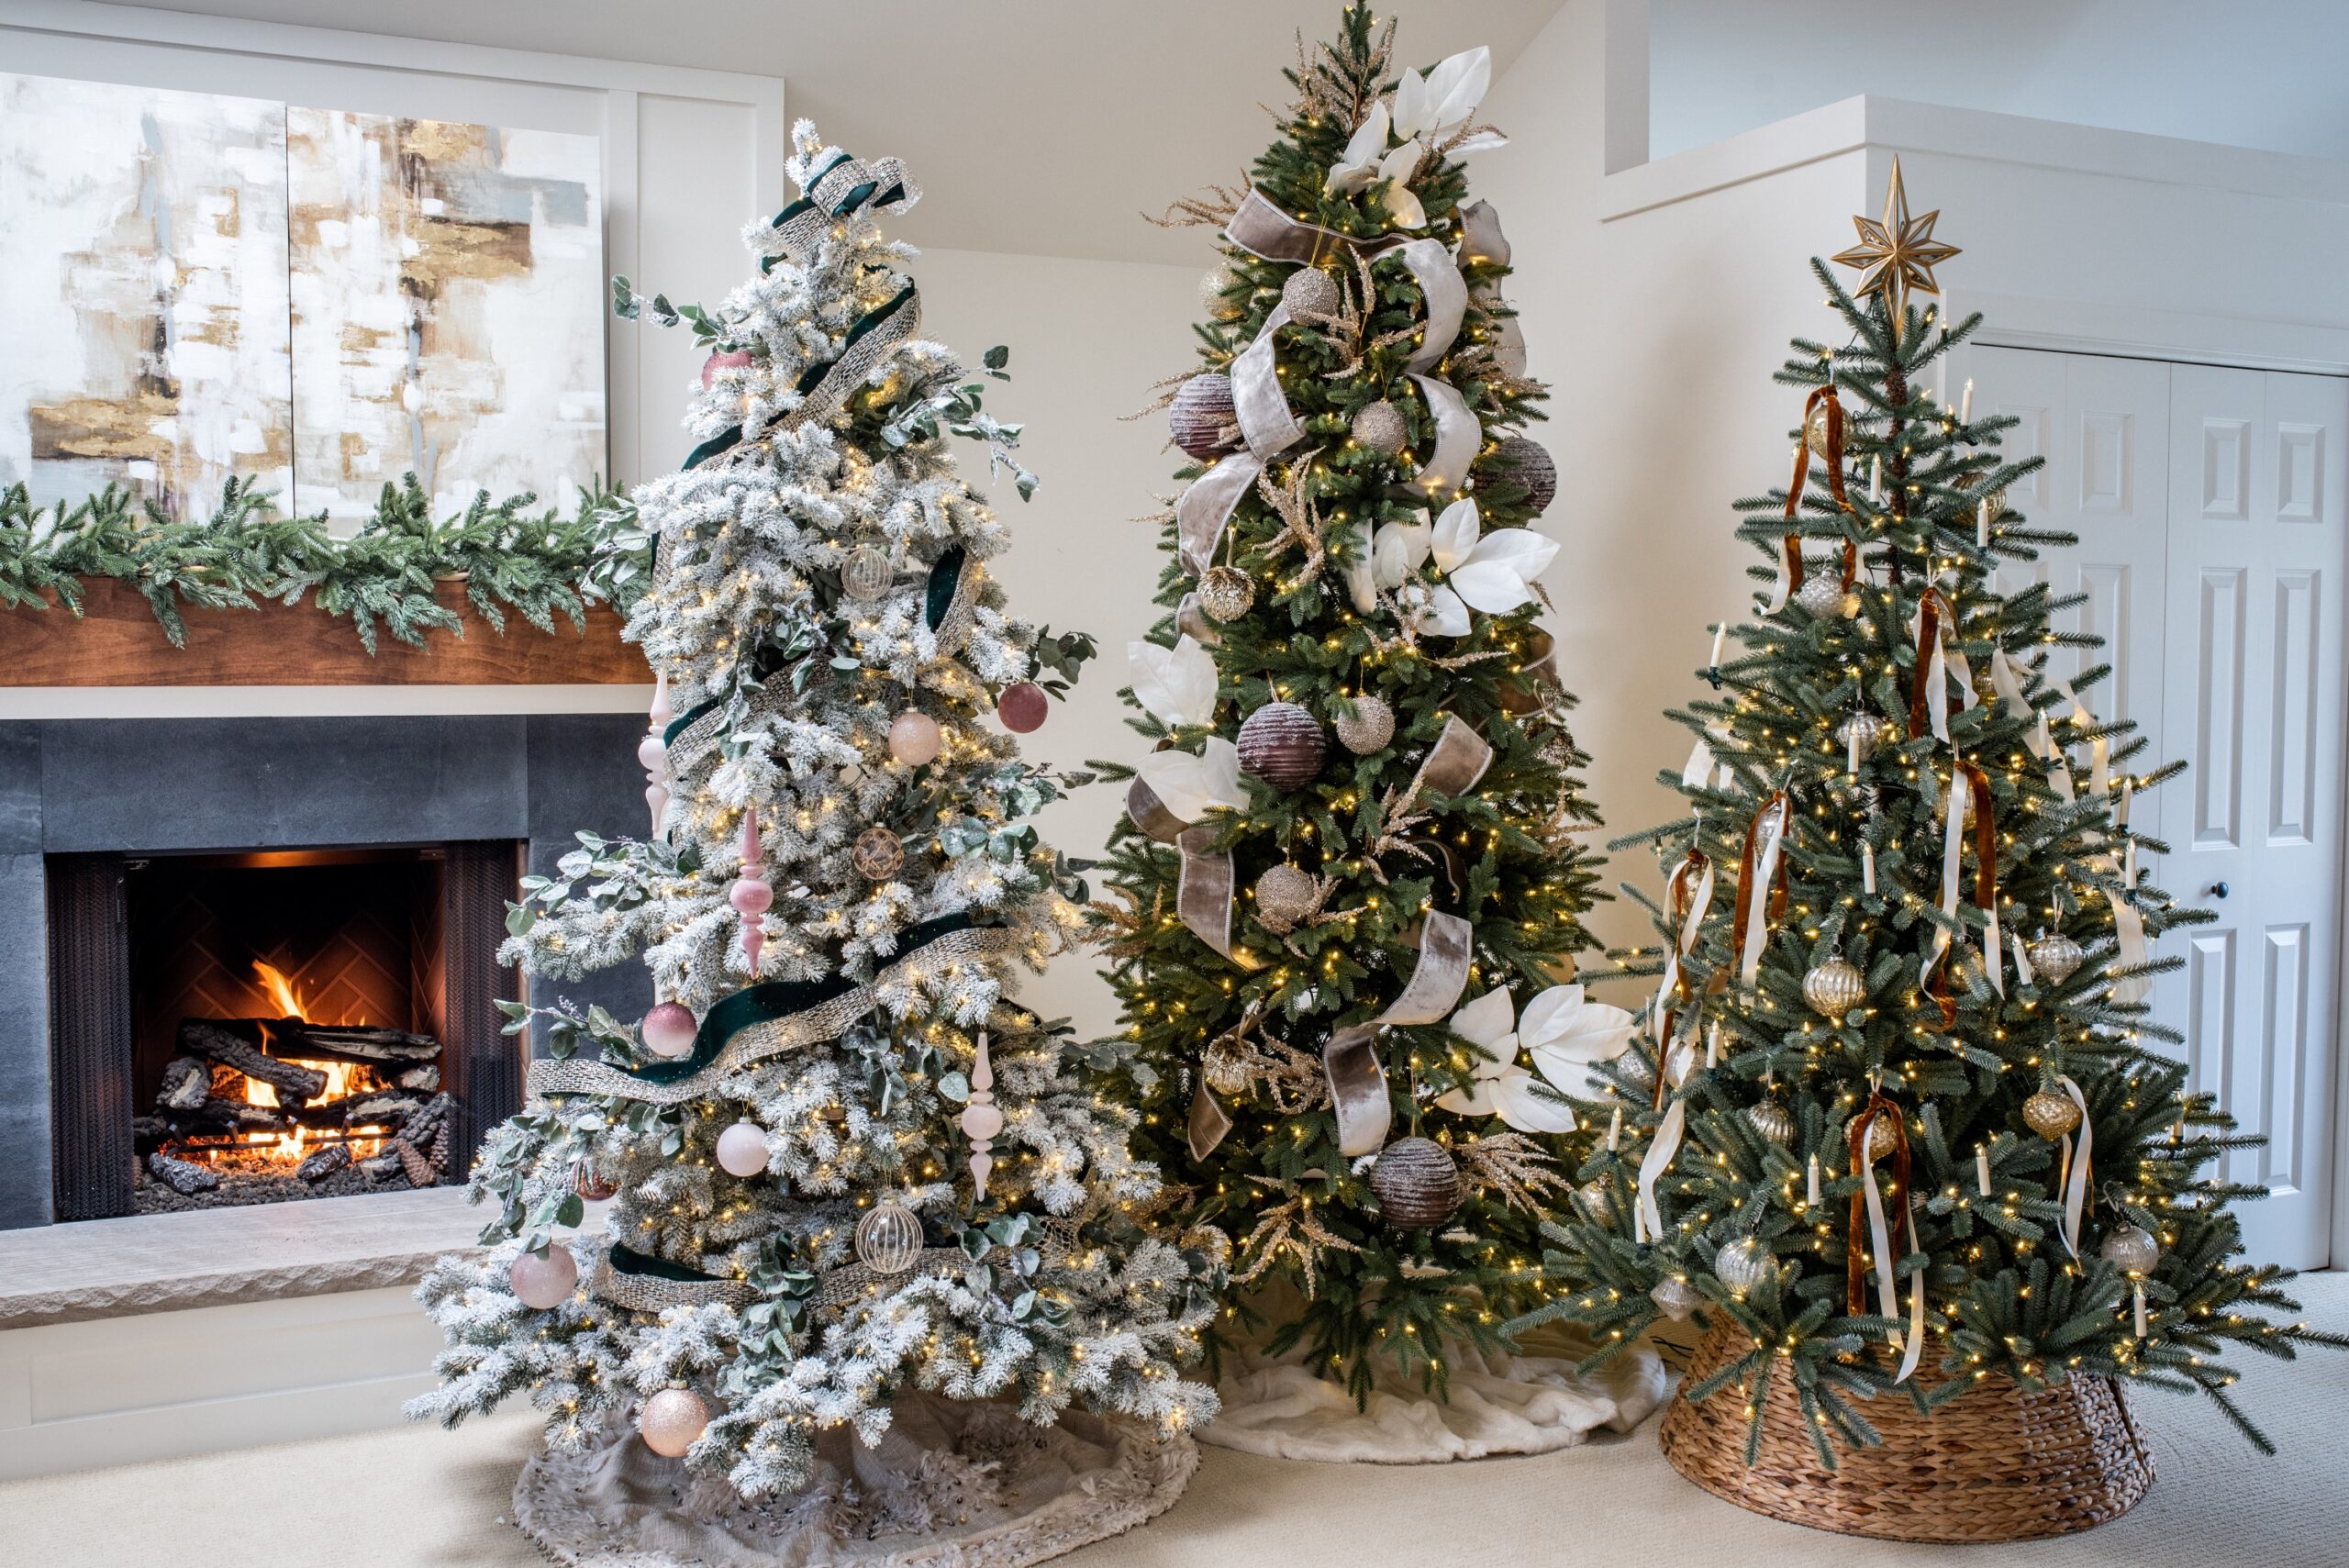 Top xmas tree ribbon decorating ideas for a festive holiday season